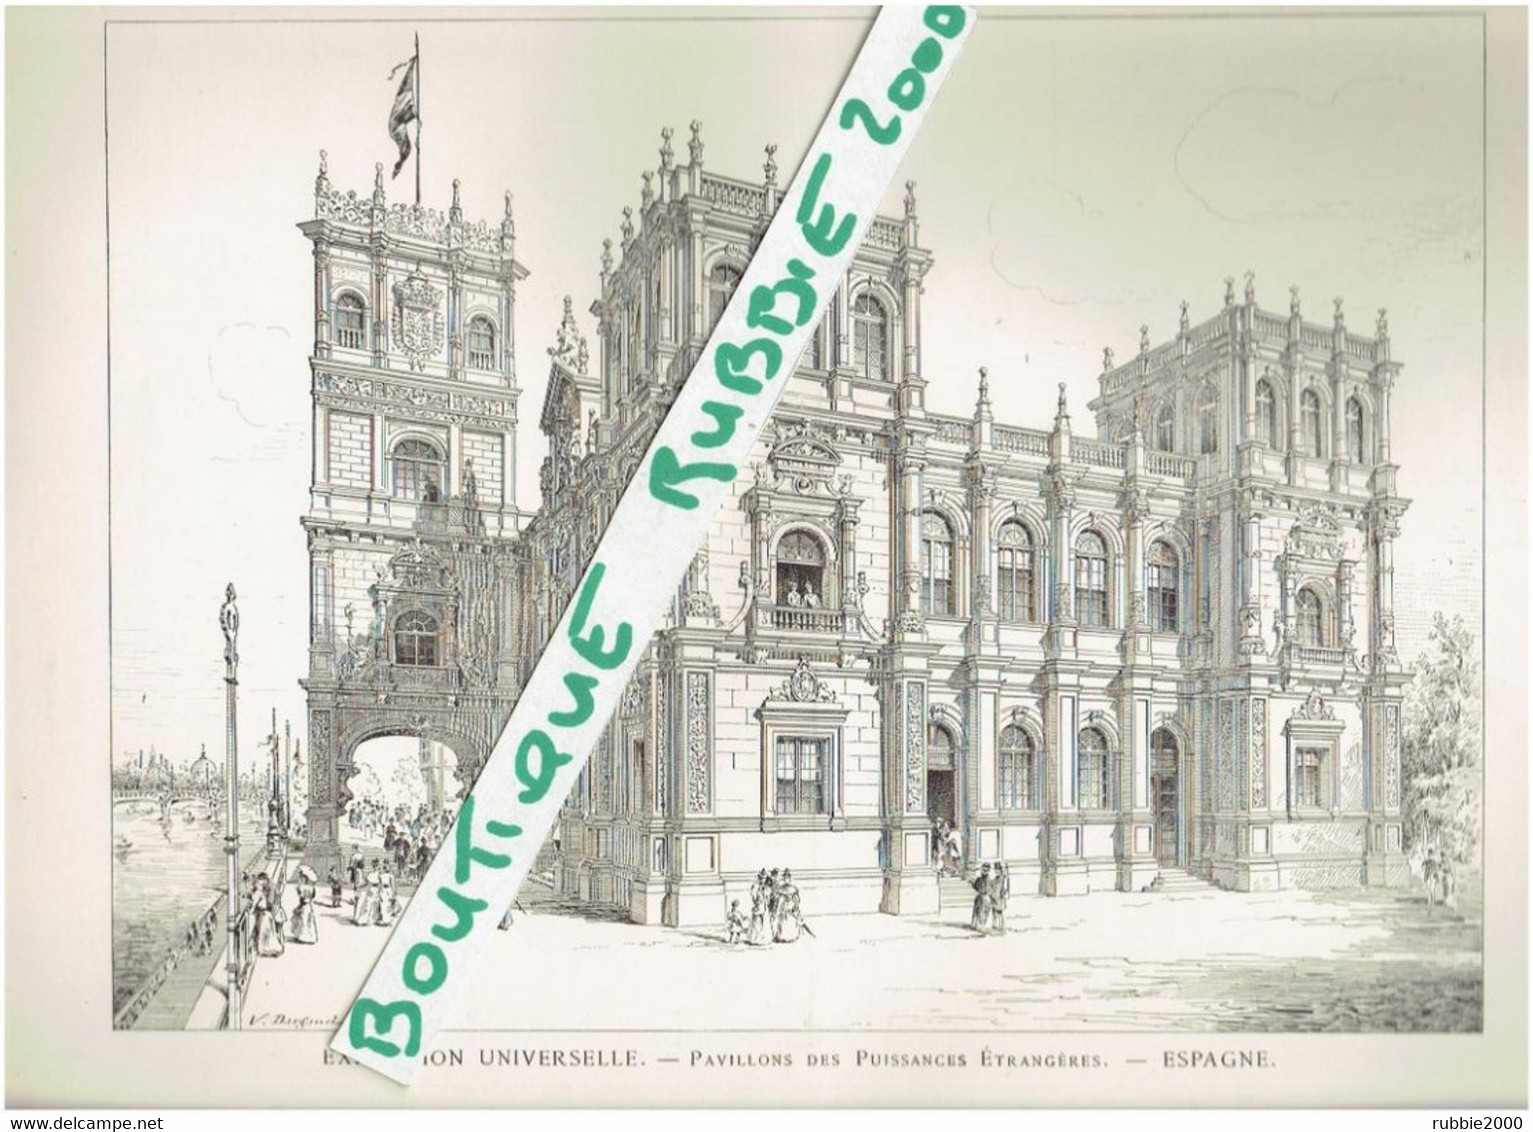 EXPOSITION UNIVERSELLE DE PARIS 1899 ESPAGNE DESSIN PAVILLON DES PUISSANCES ETRANGERES - Parigi